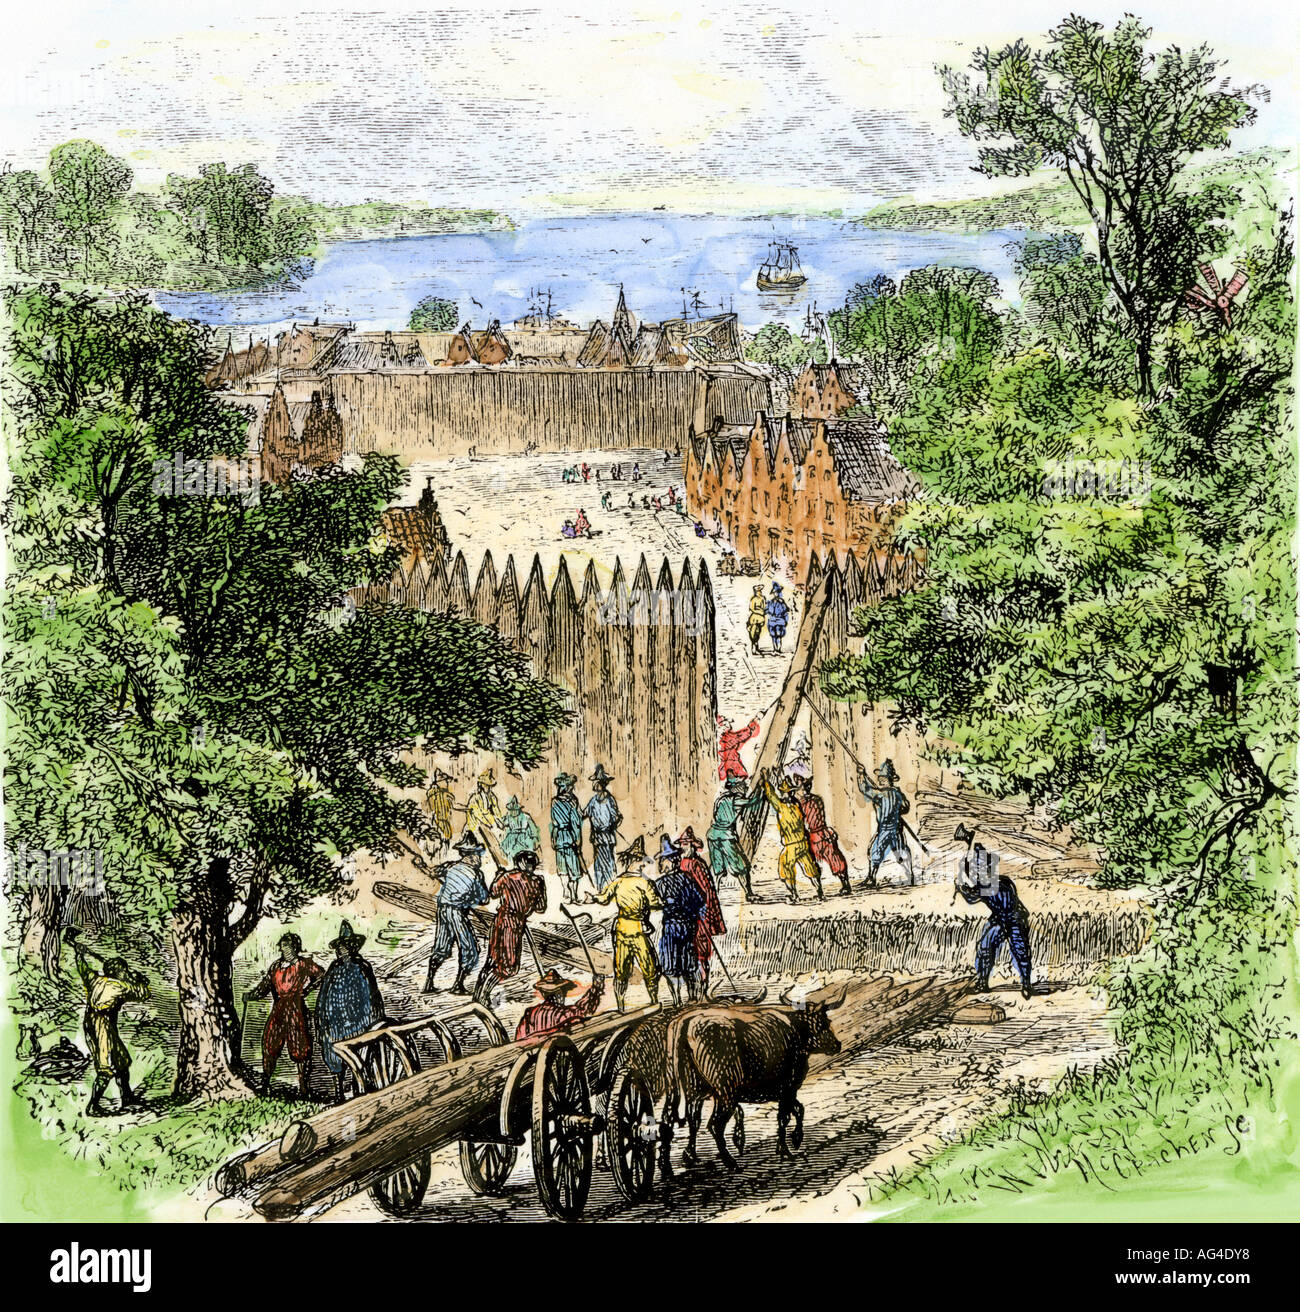 Les colons néerlandais le périmètre du bâtiment stockade sur l'île de Manhattan qui est devenu Wall Street New Amsterdam 1650s. À la main, gravure sur bois Banque D'Images